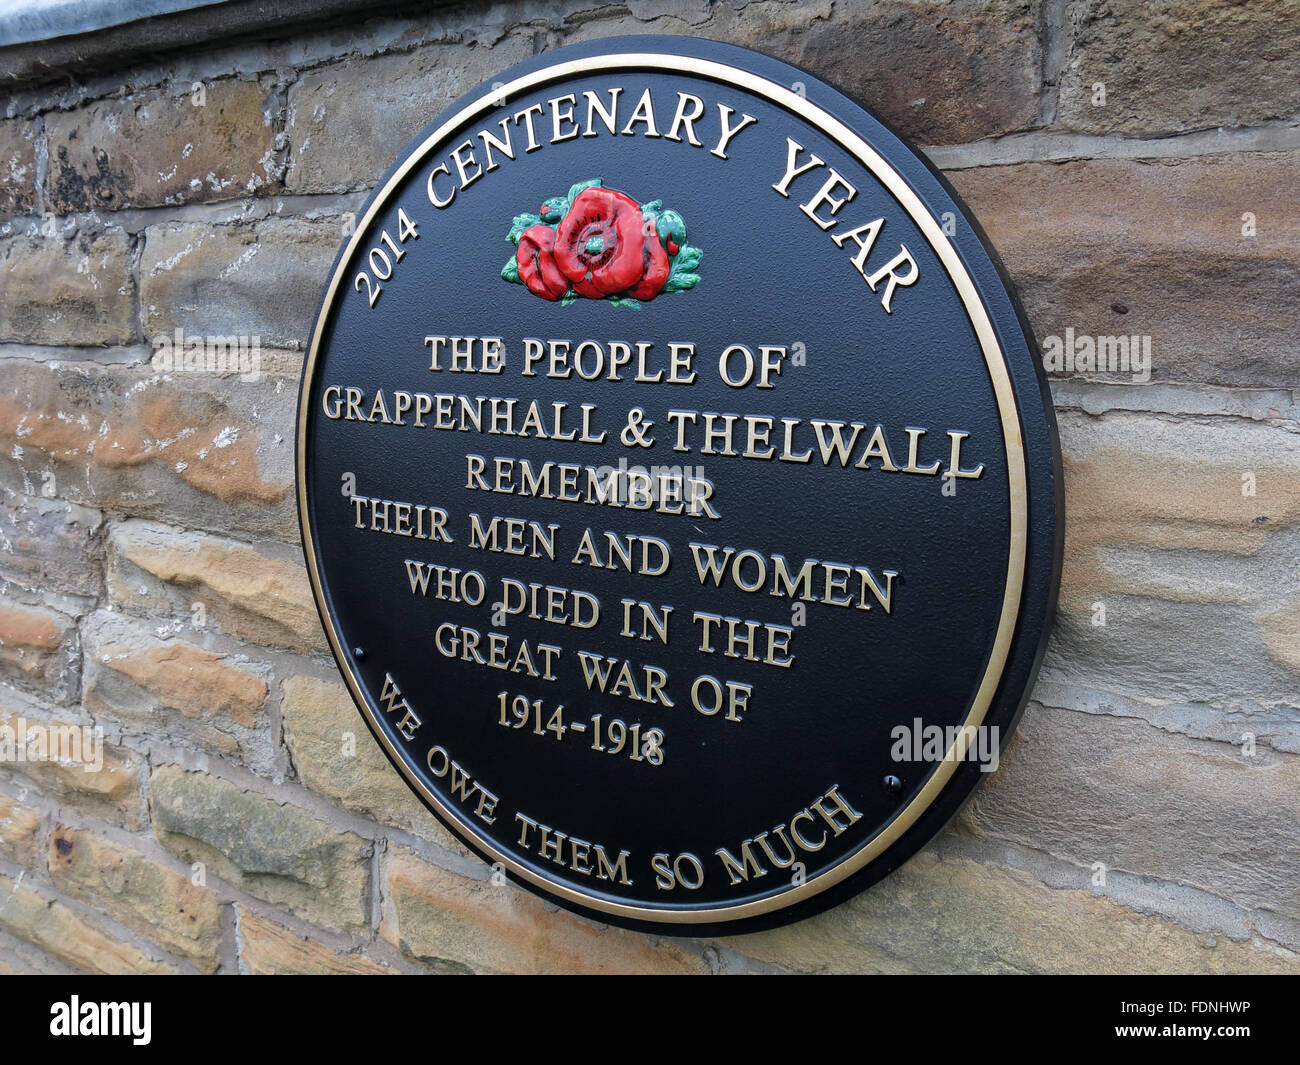 2014 Anno Centenario di placca, Grappenhall & Thelwall - Grande guerra 1914-1918, Cheshire, Inghilterra, Regno Unito - chiesa metodista Foto Stock